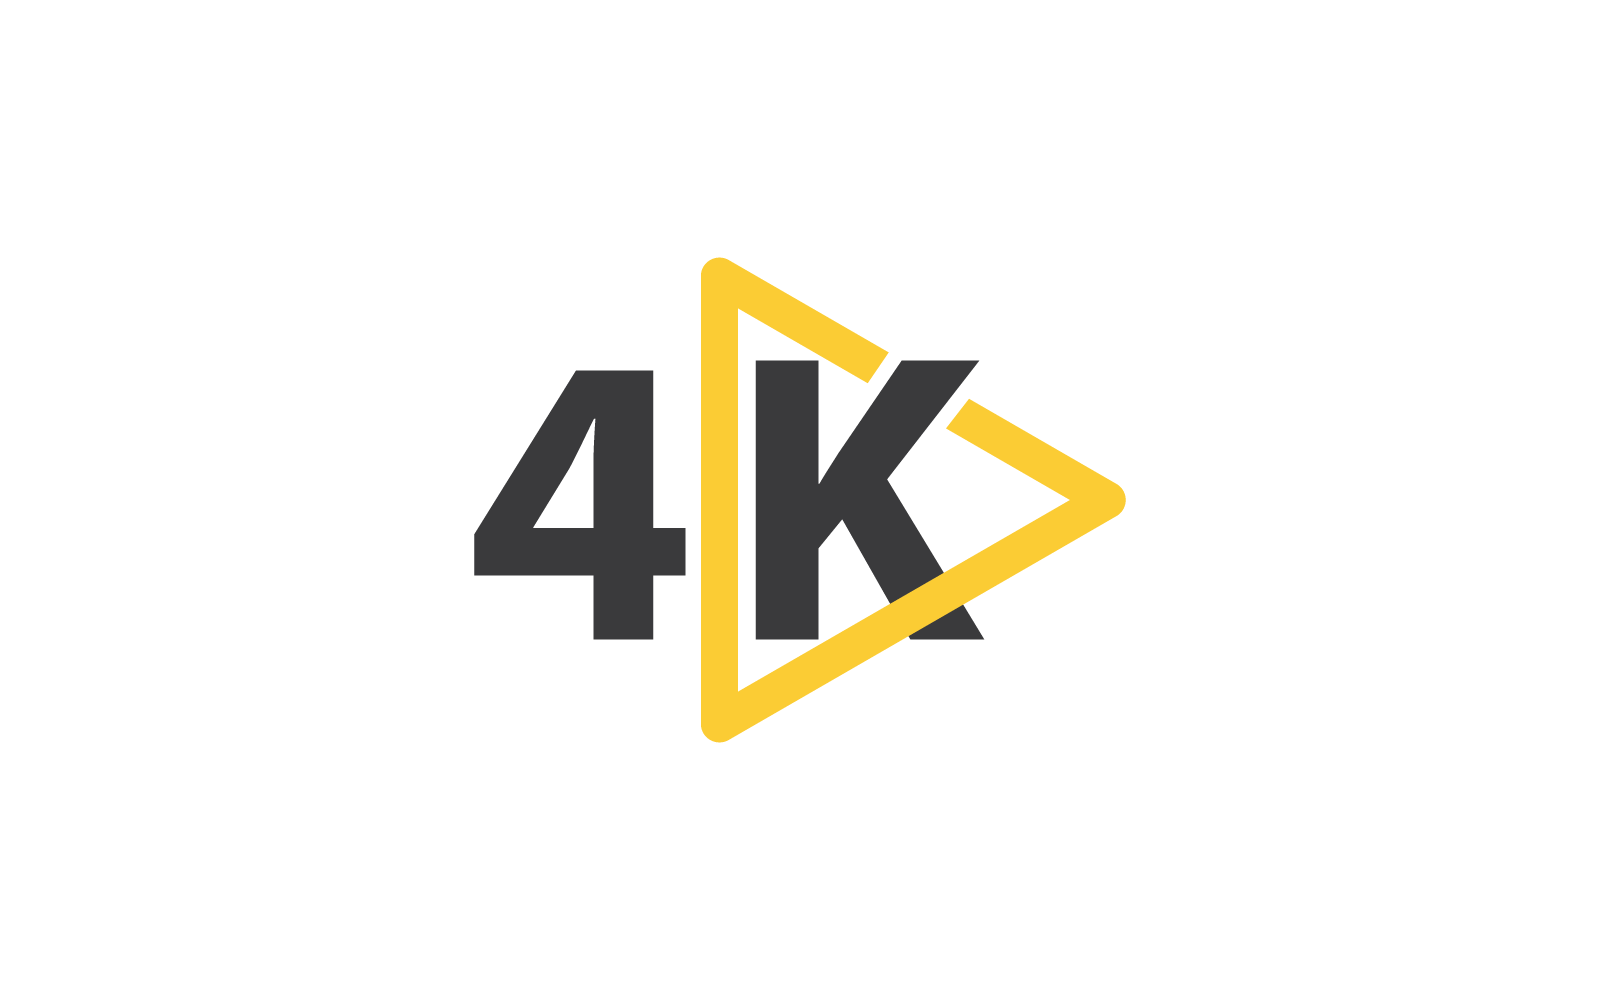 4K Ultra HD vector flat design illustration